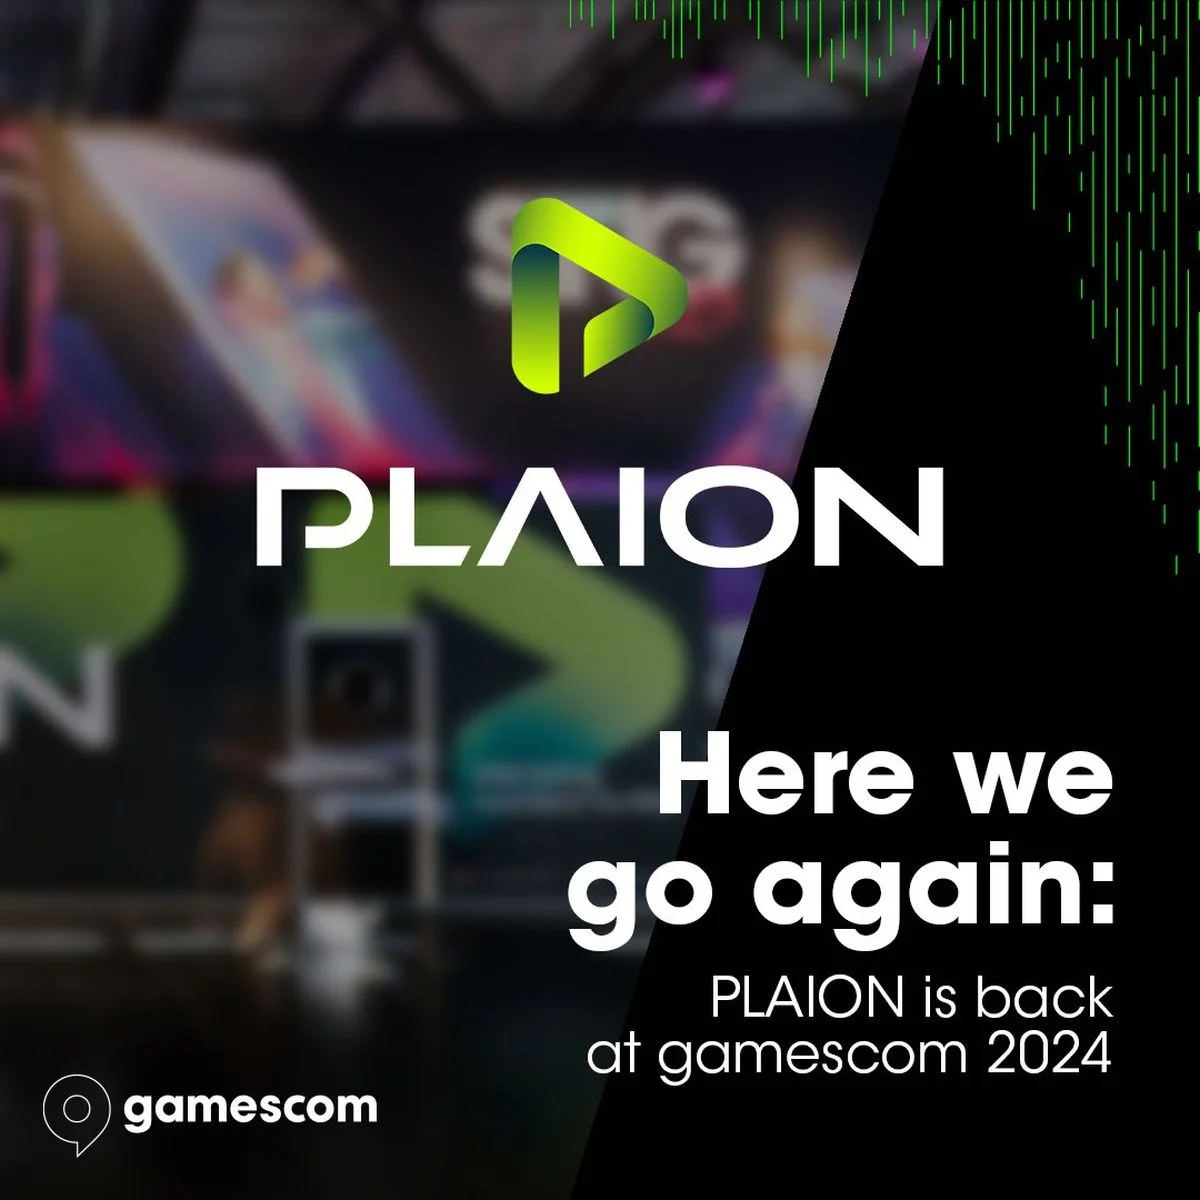 Plaion примет участие в gamescom 2024 - фото 1